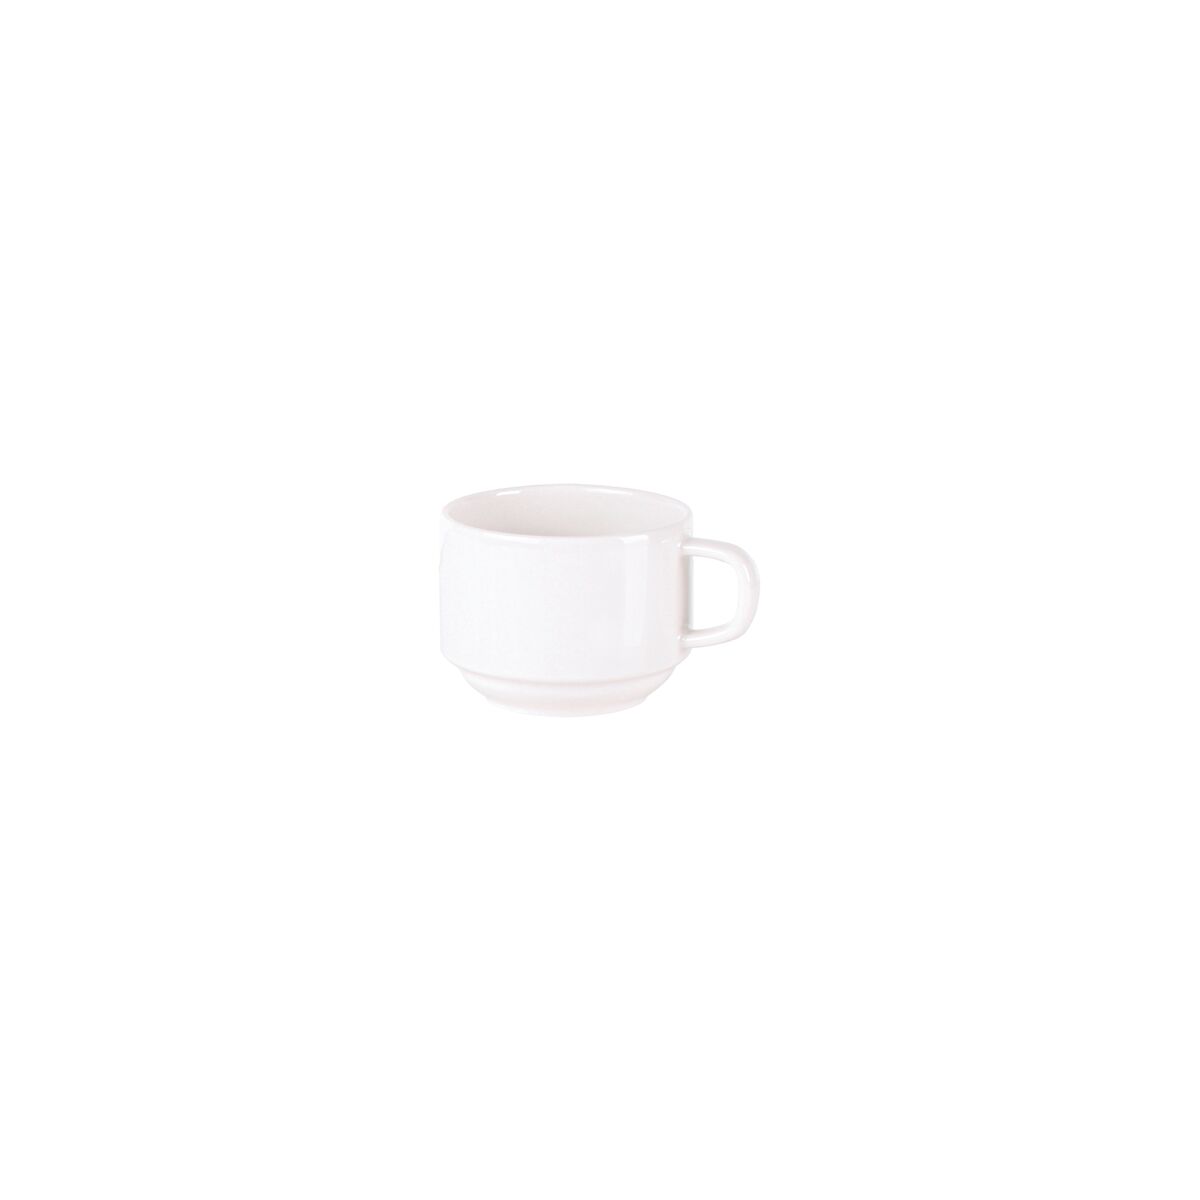 Tramontina Paola 240 ml Porcelain Tea Cup